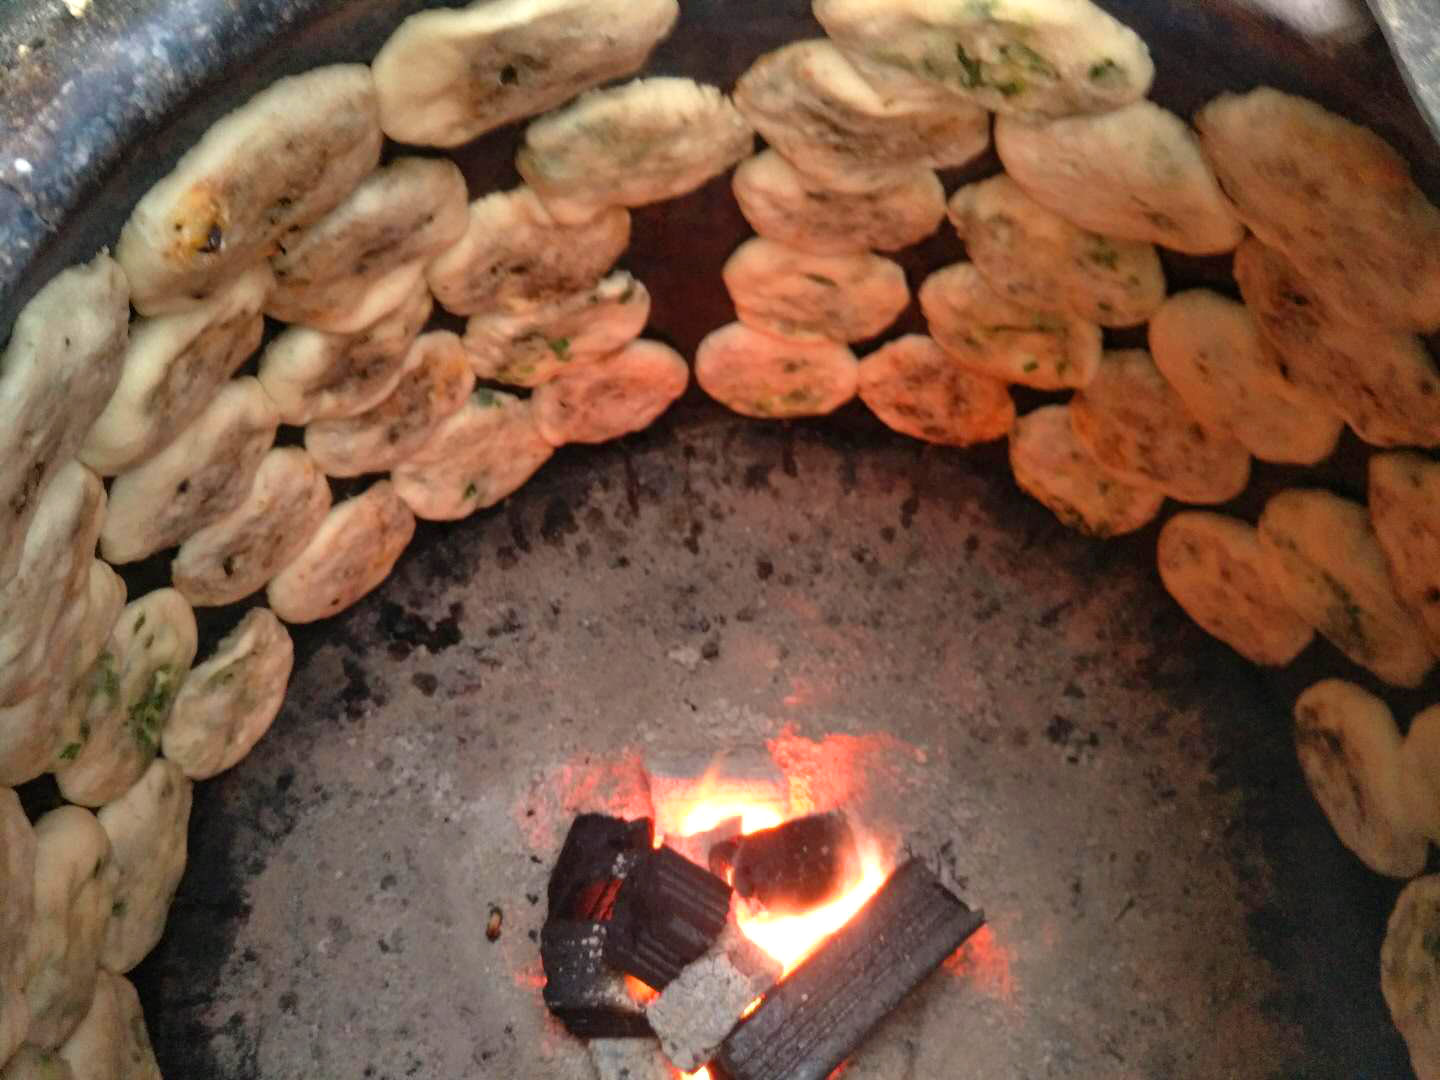 全部饼胚贴完之后,木炭火加热烤好的光饼火热出炉松溪火烧饼采用纯